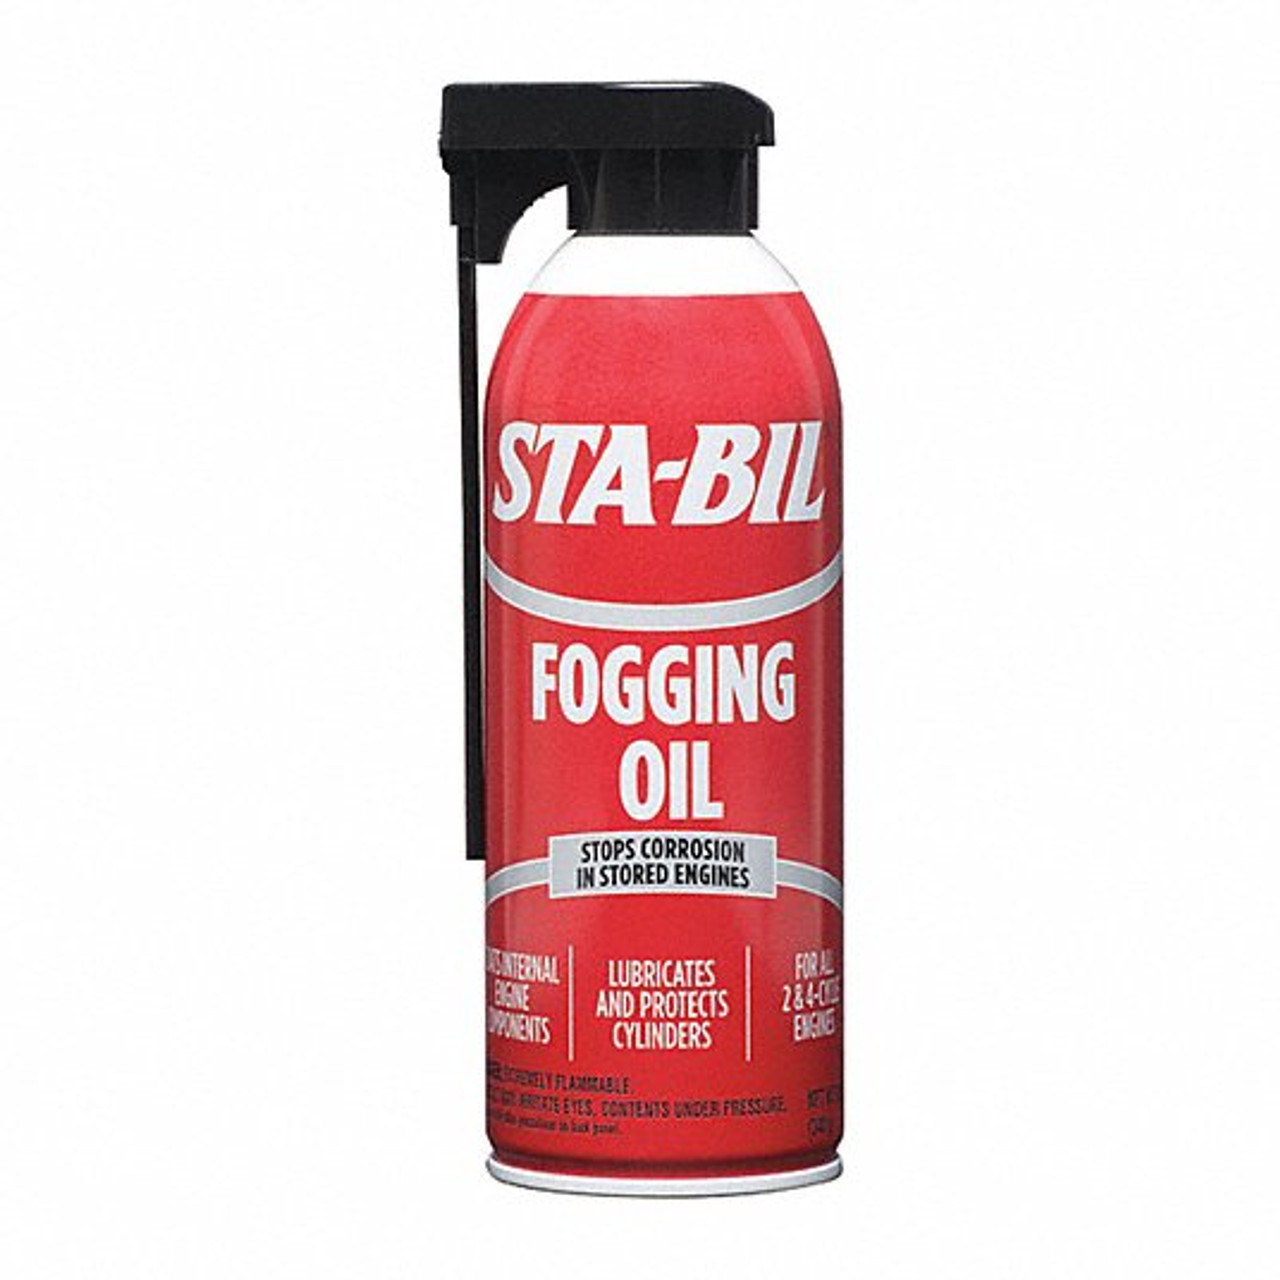 STA-BIL Fogging Oil - 12oz